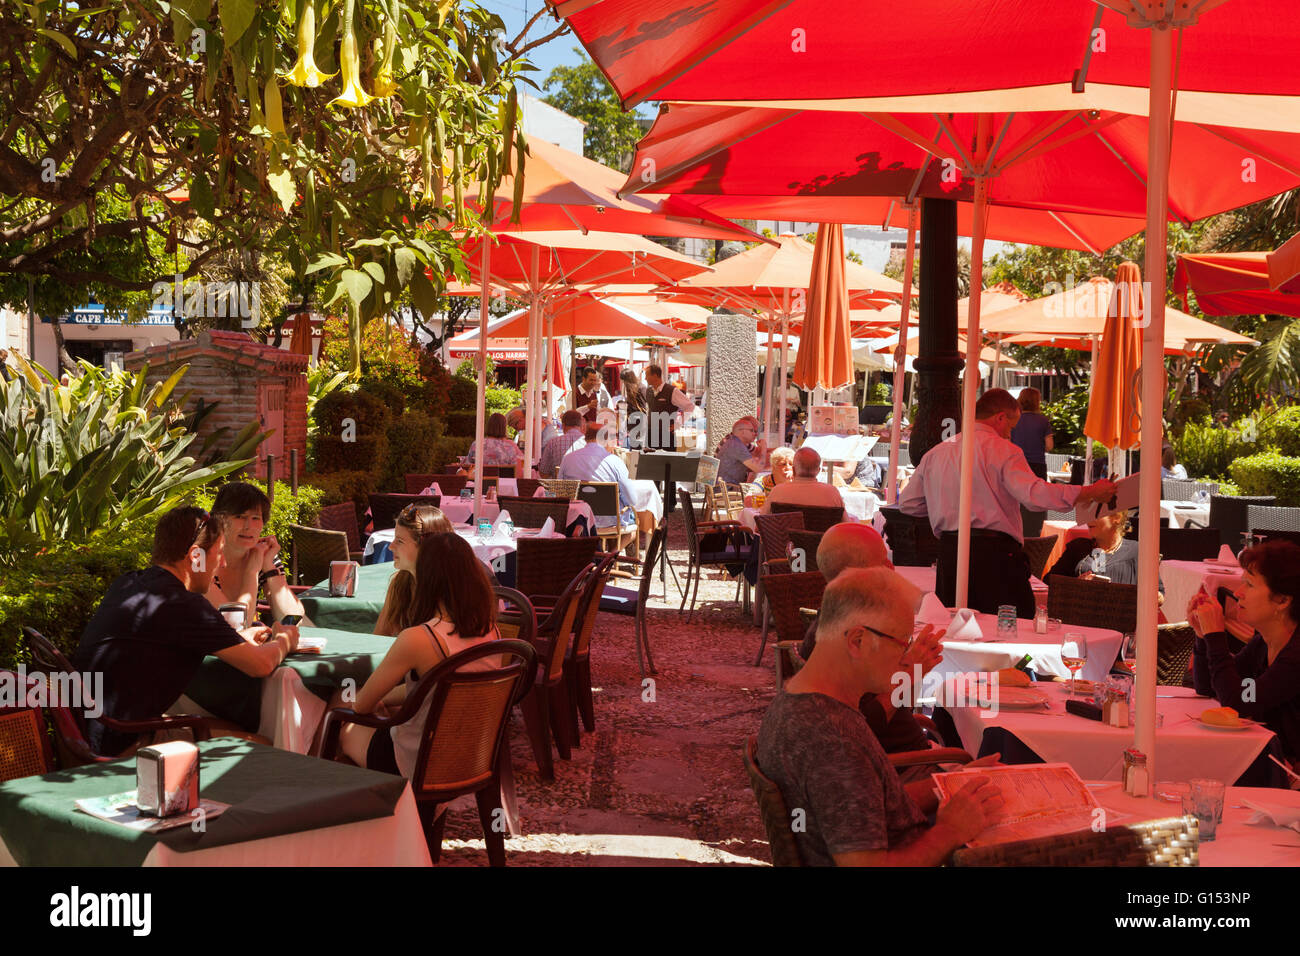 Les gens de boire à un café de la rue, la Plaza de los Naranjos ( carré orange ), vieille ville de Marbella, Costa del Sol, Andalousie Espagne Banque D'Images